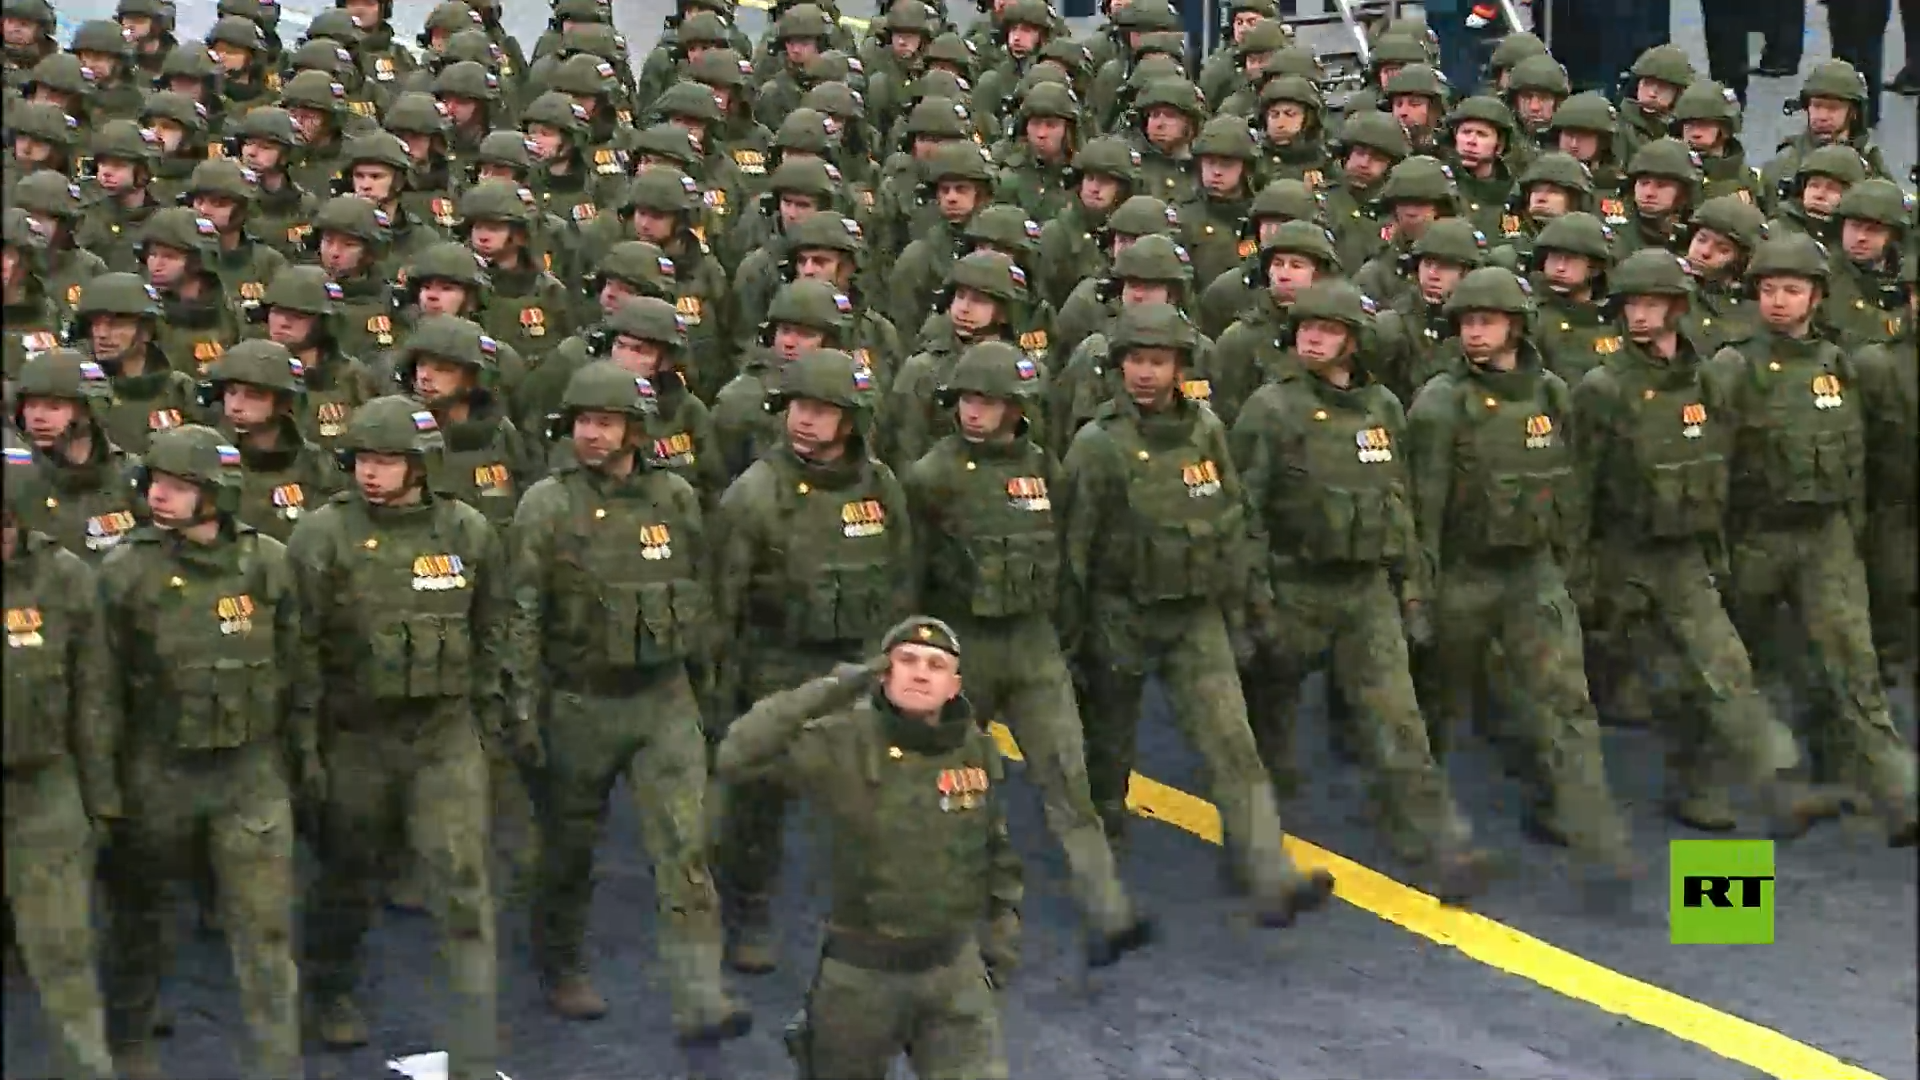 الساحة الحمراء تشهد استعراضا لفرقة من العسكريين المنخرطين في العملية الروسية الخاصة بأوكرانيا